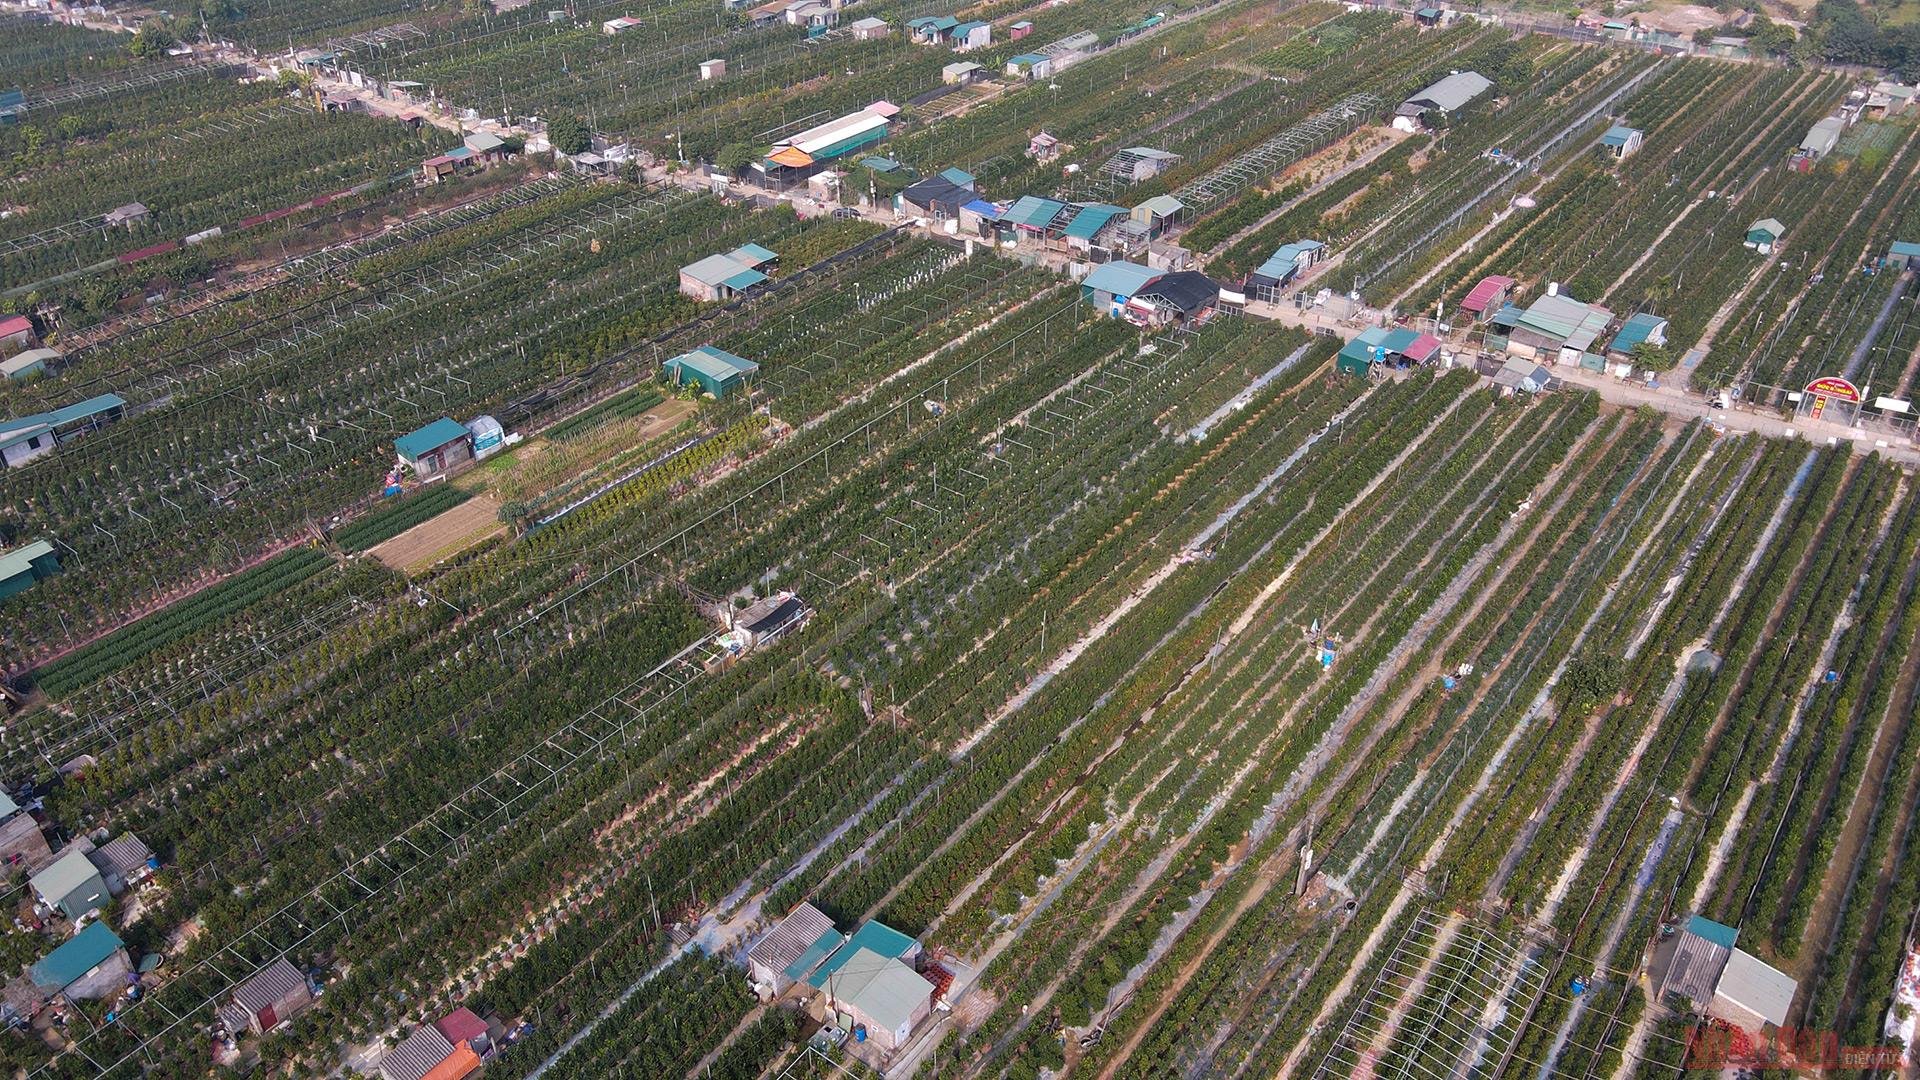  Ngay từ cả tháng trước Tết Nguyên Đán, các nhà vườn quất ở Tứ Liên (quận Tây Hồ, Hà Nội) đã tất bật chuẩn bị các sản phẩm chào đón Tết Tân Sửu 2021.